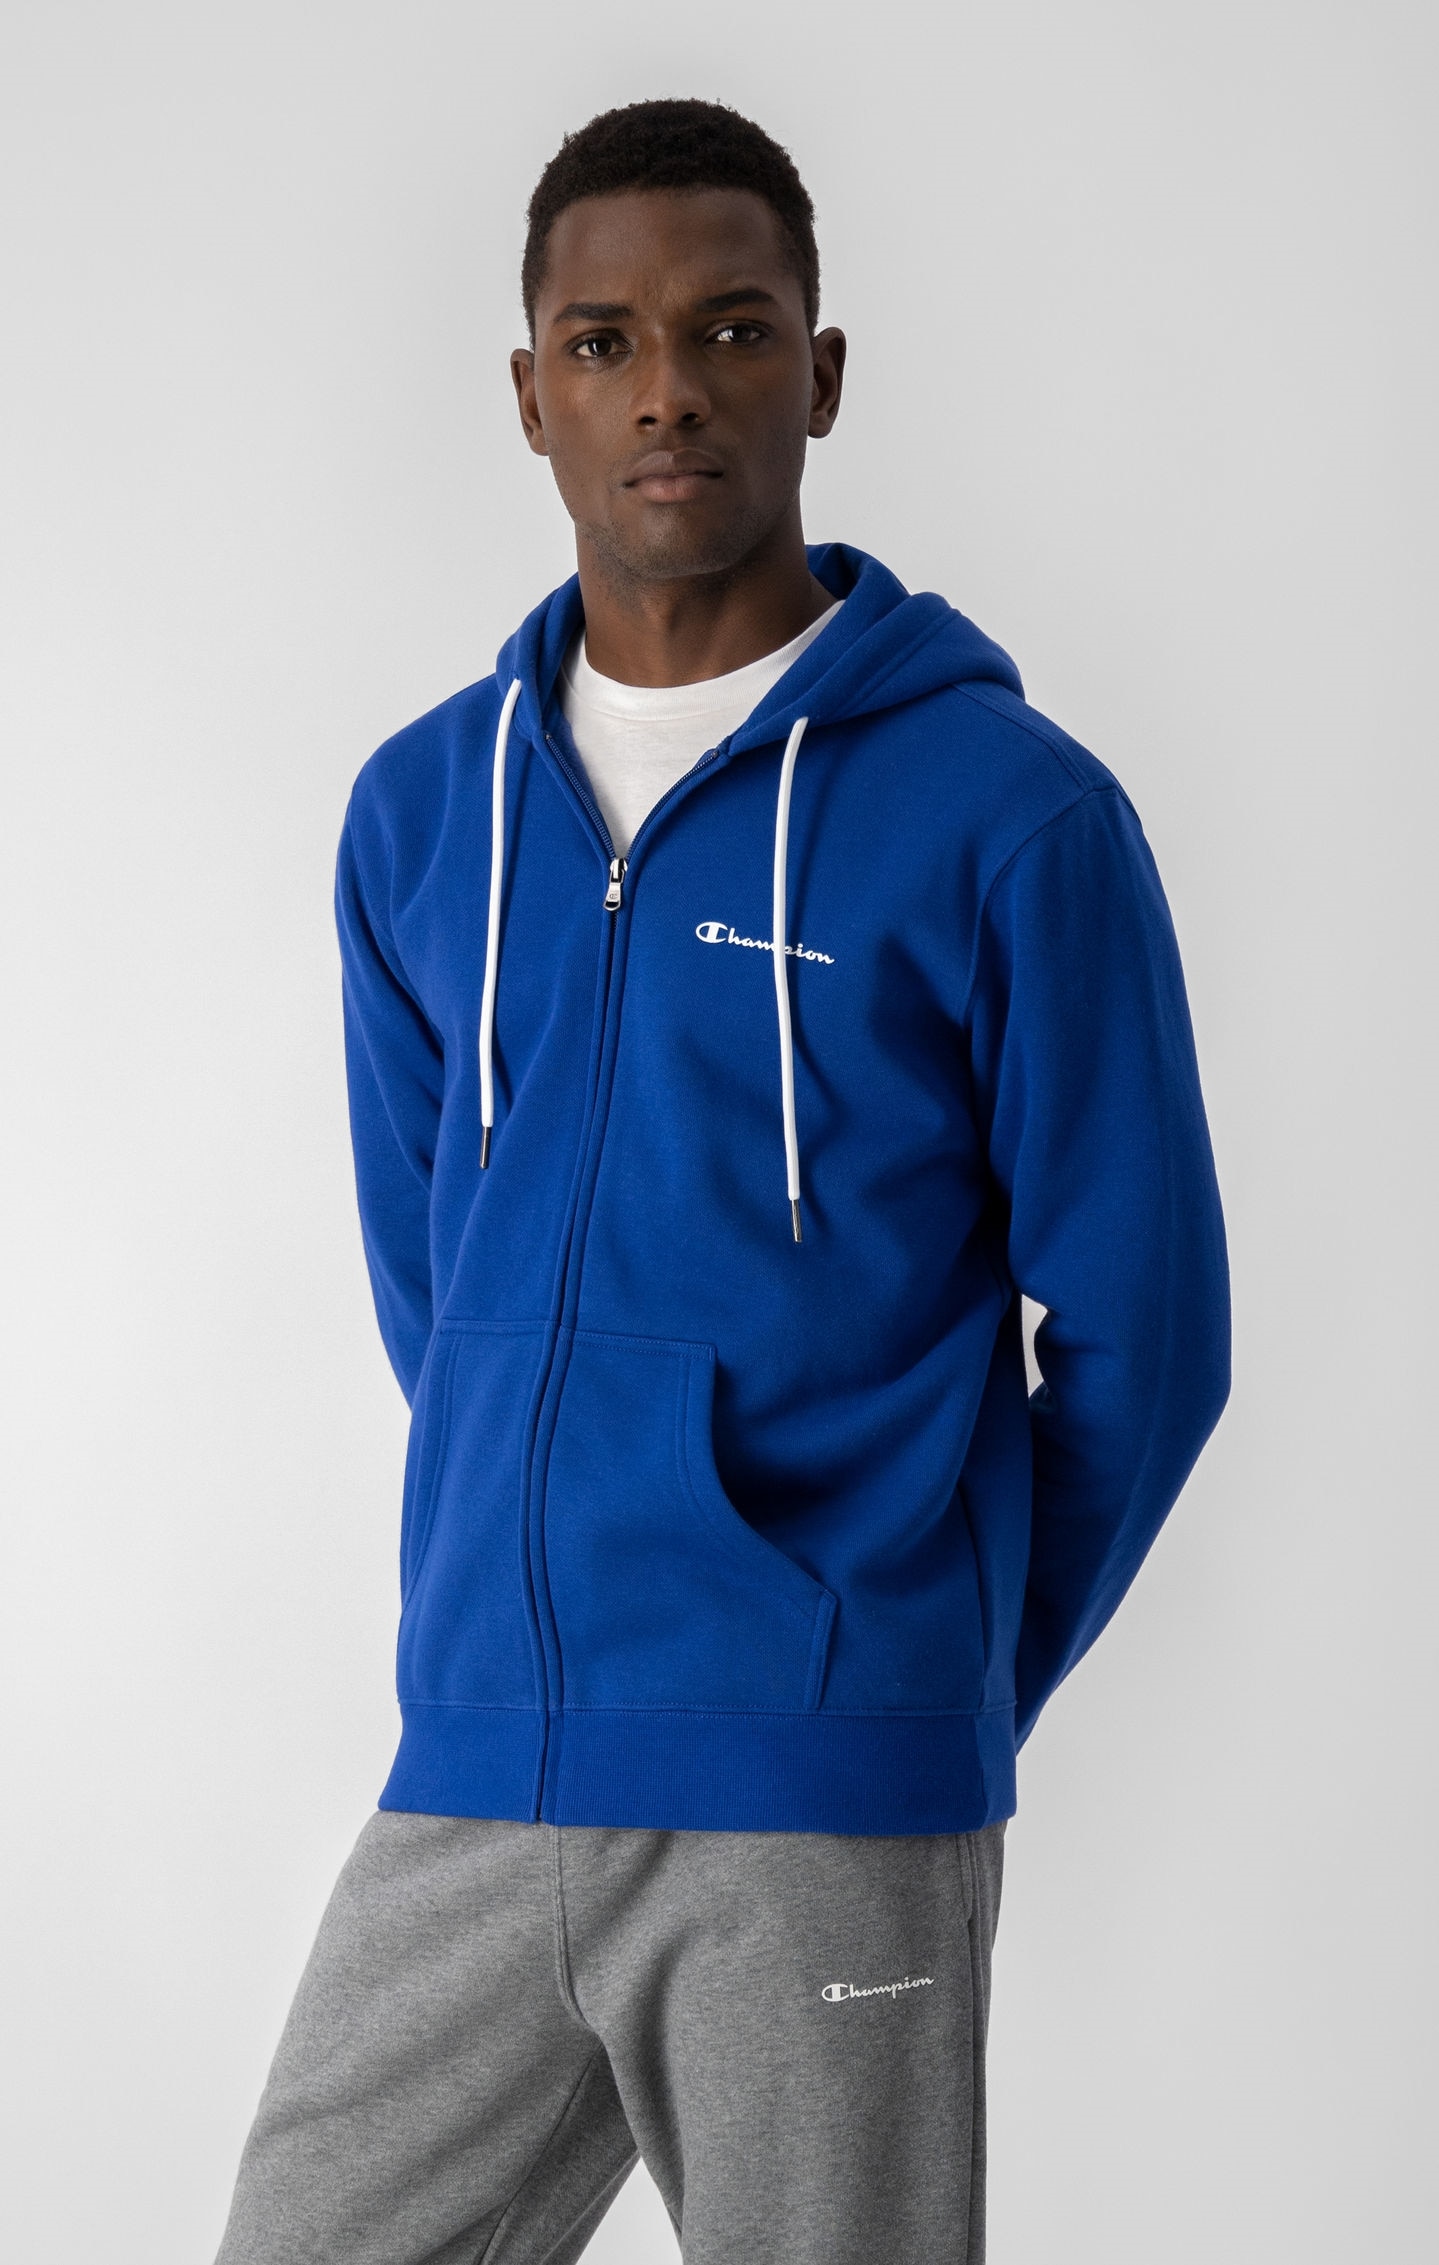 Sweatshirt zippé à capuche et petit logo Champion imprimé